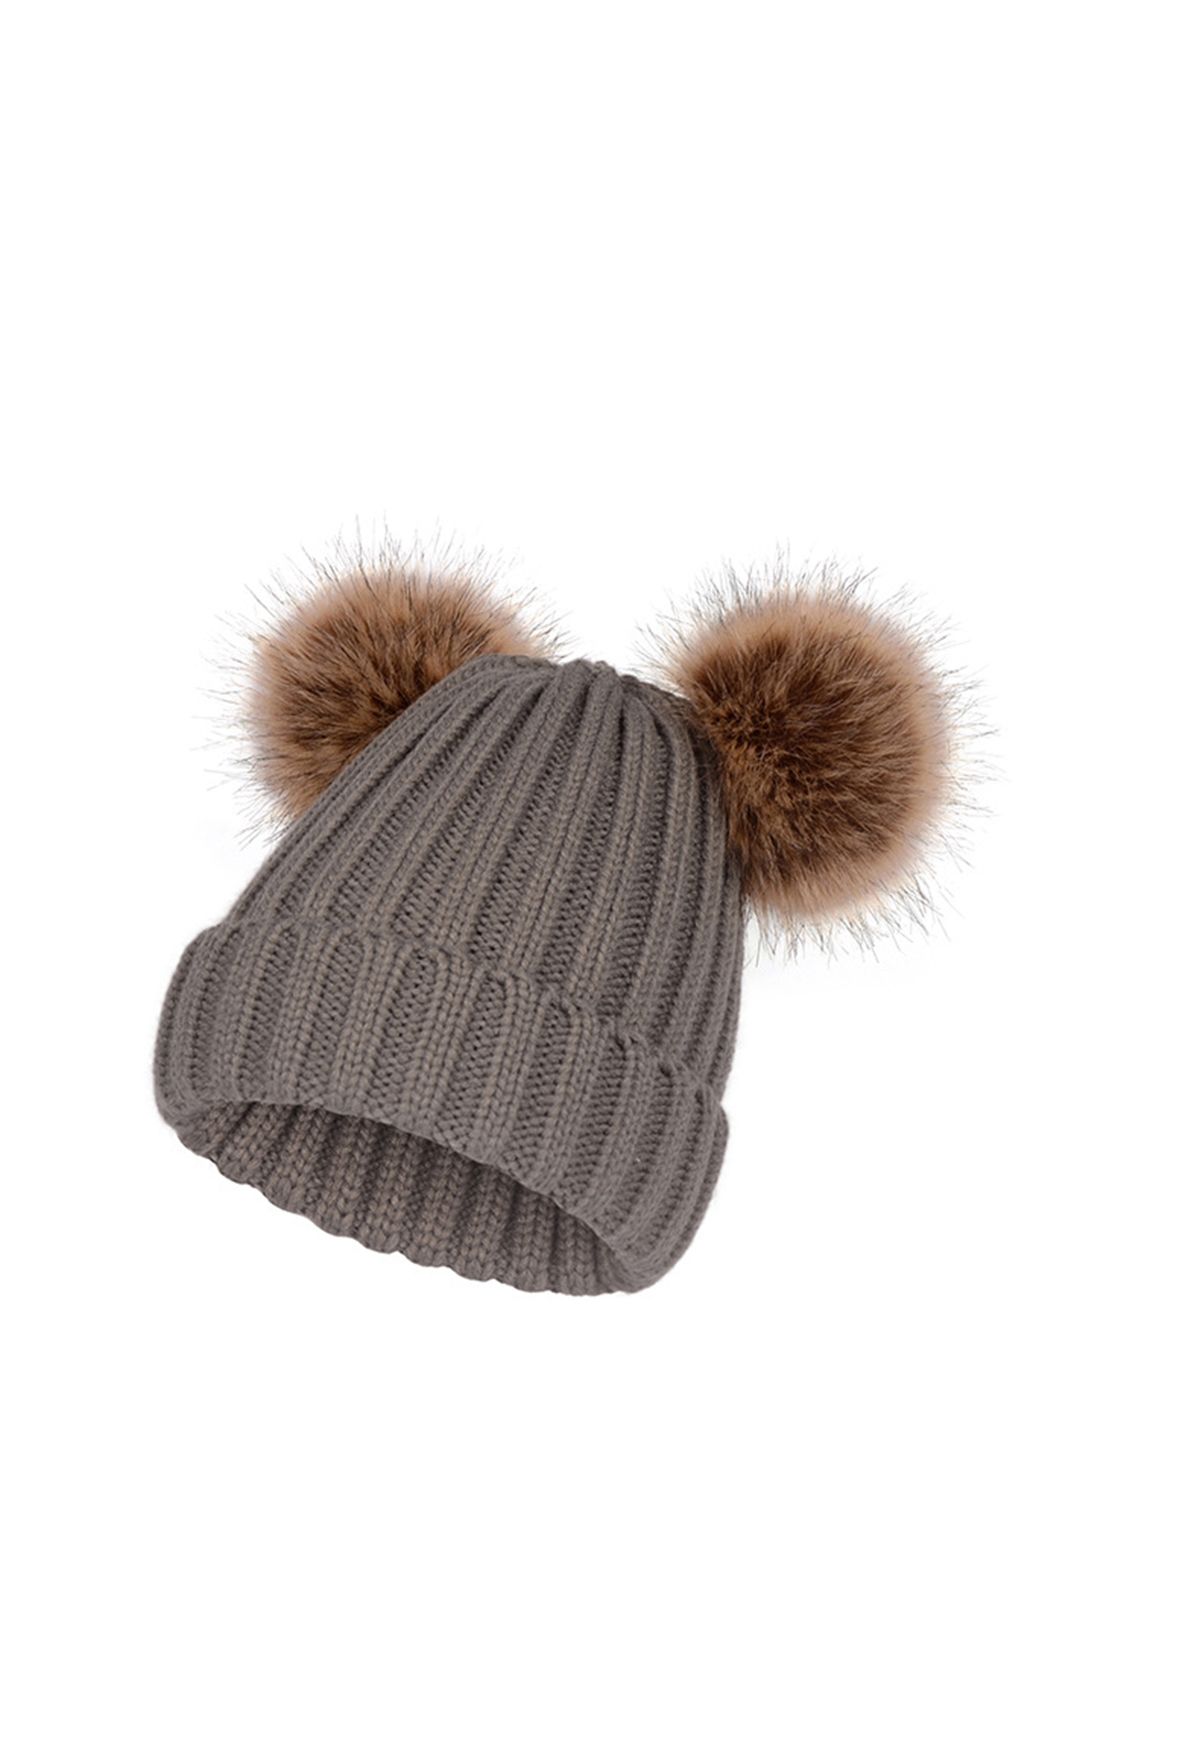 Fuzzy Pom-Pom Knit Beanie Hat in Smoke